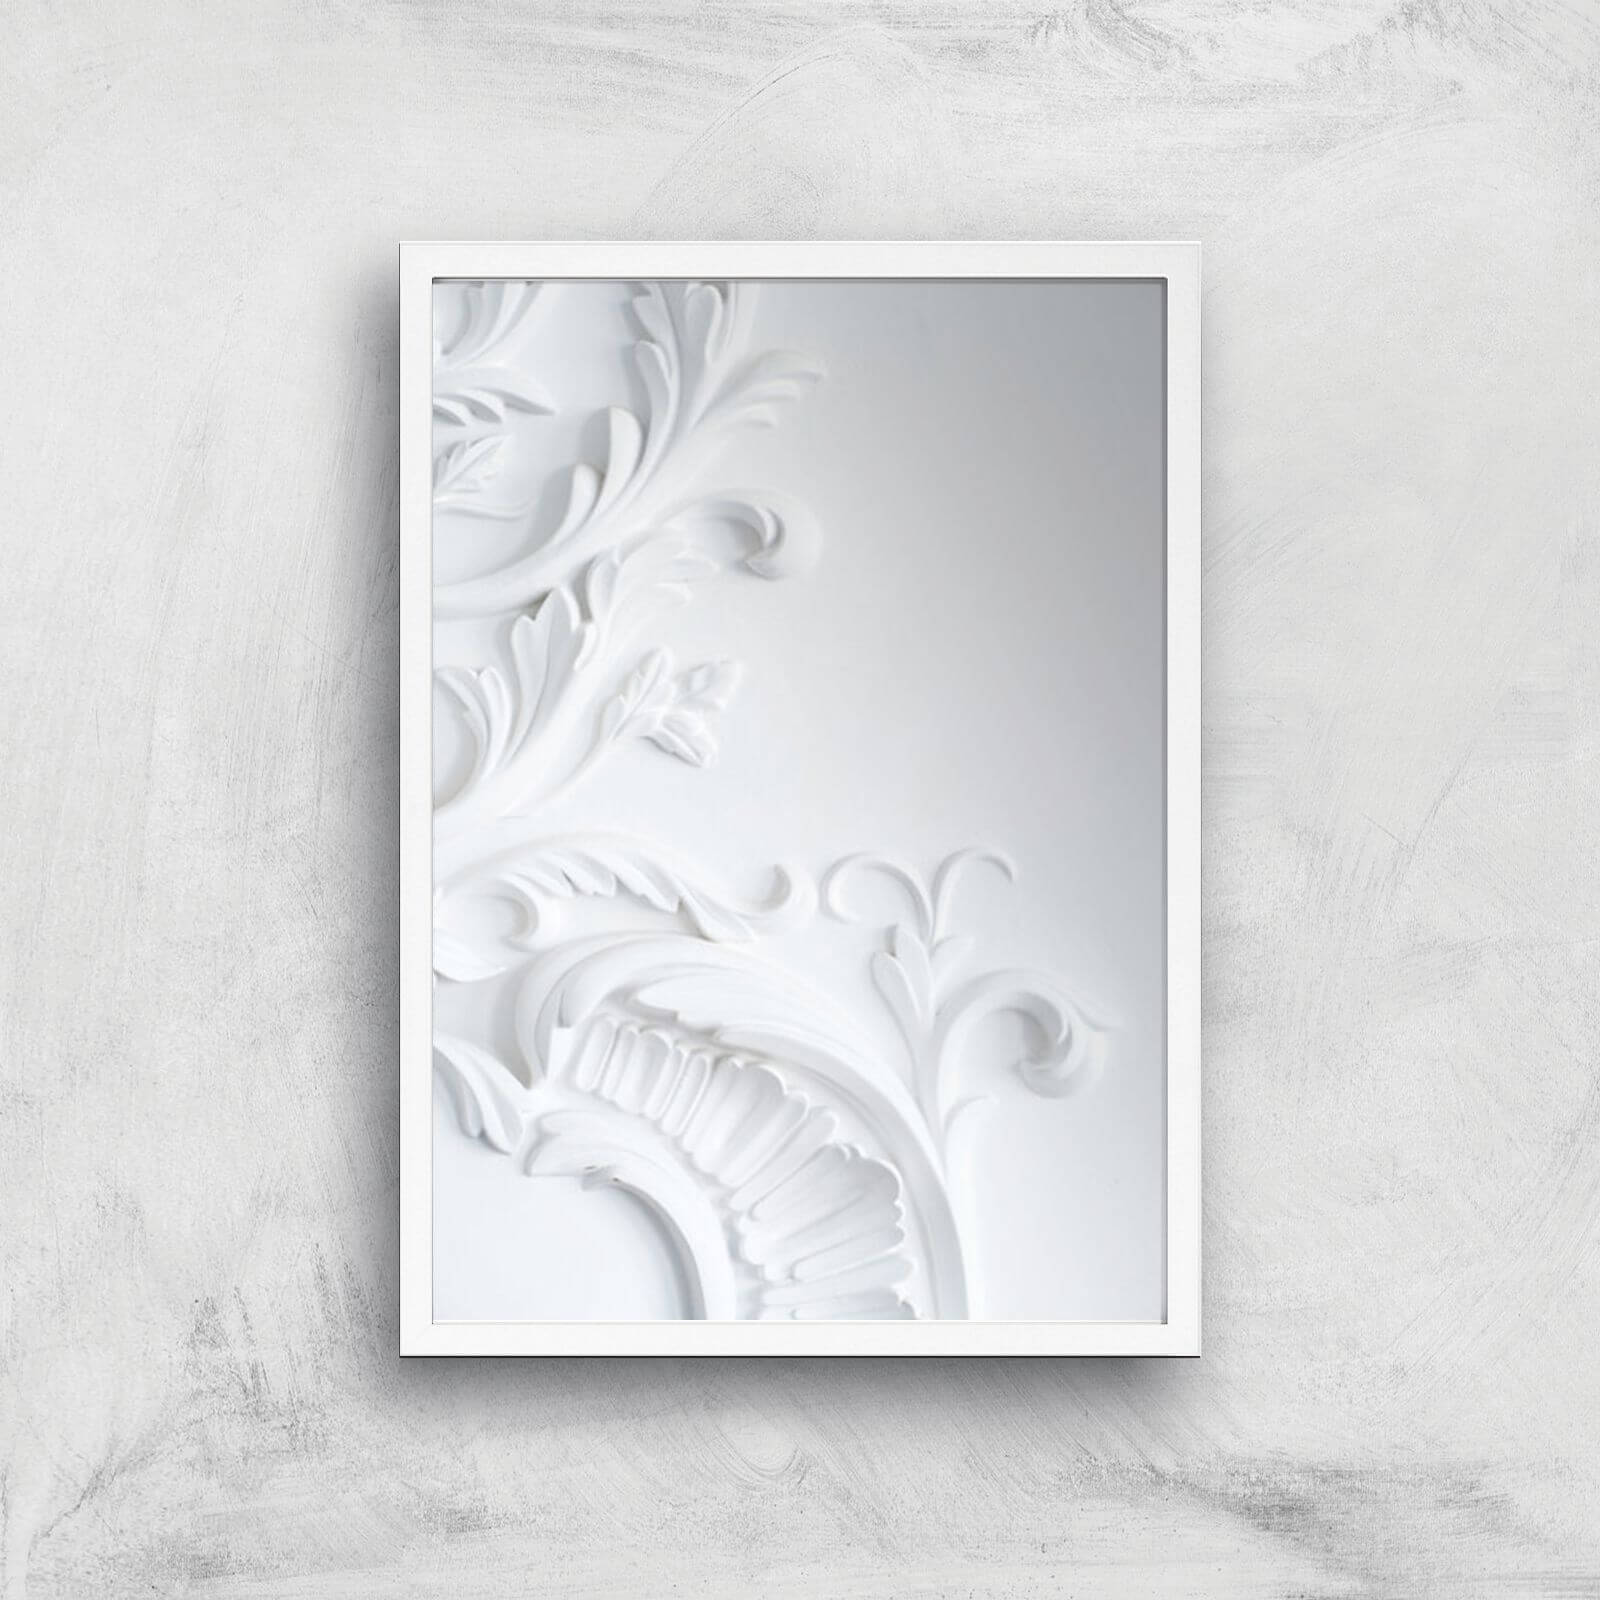 Louis Giclee Art Print - A2 - White Frame